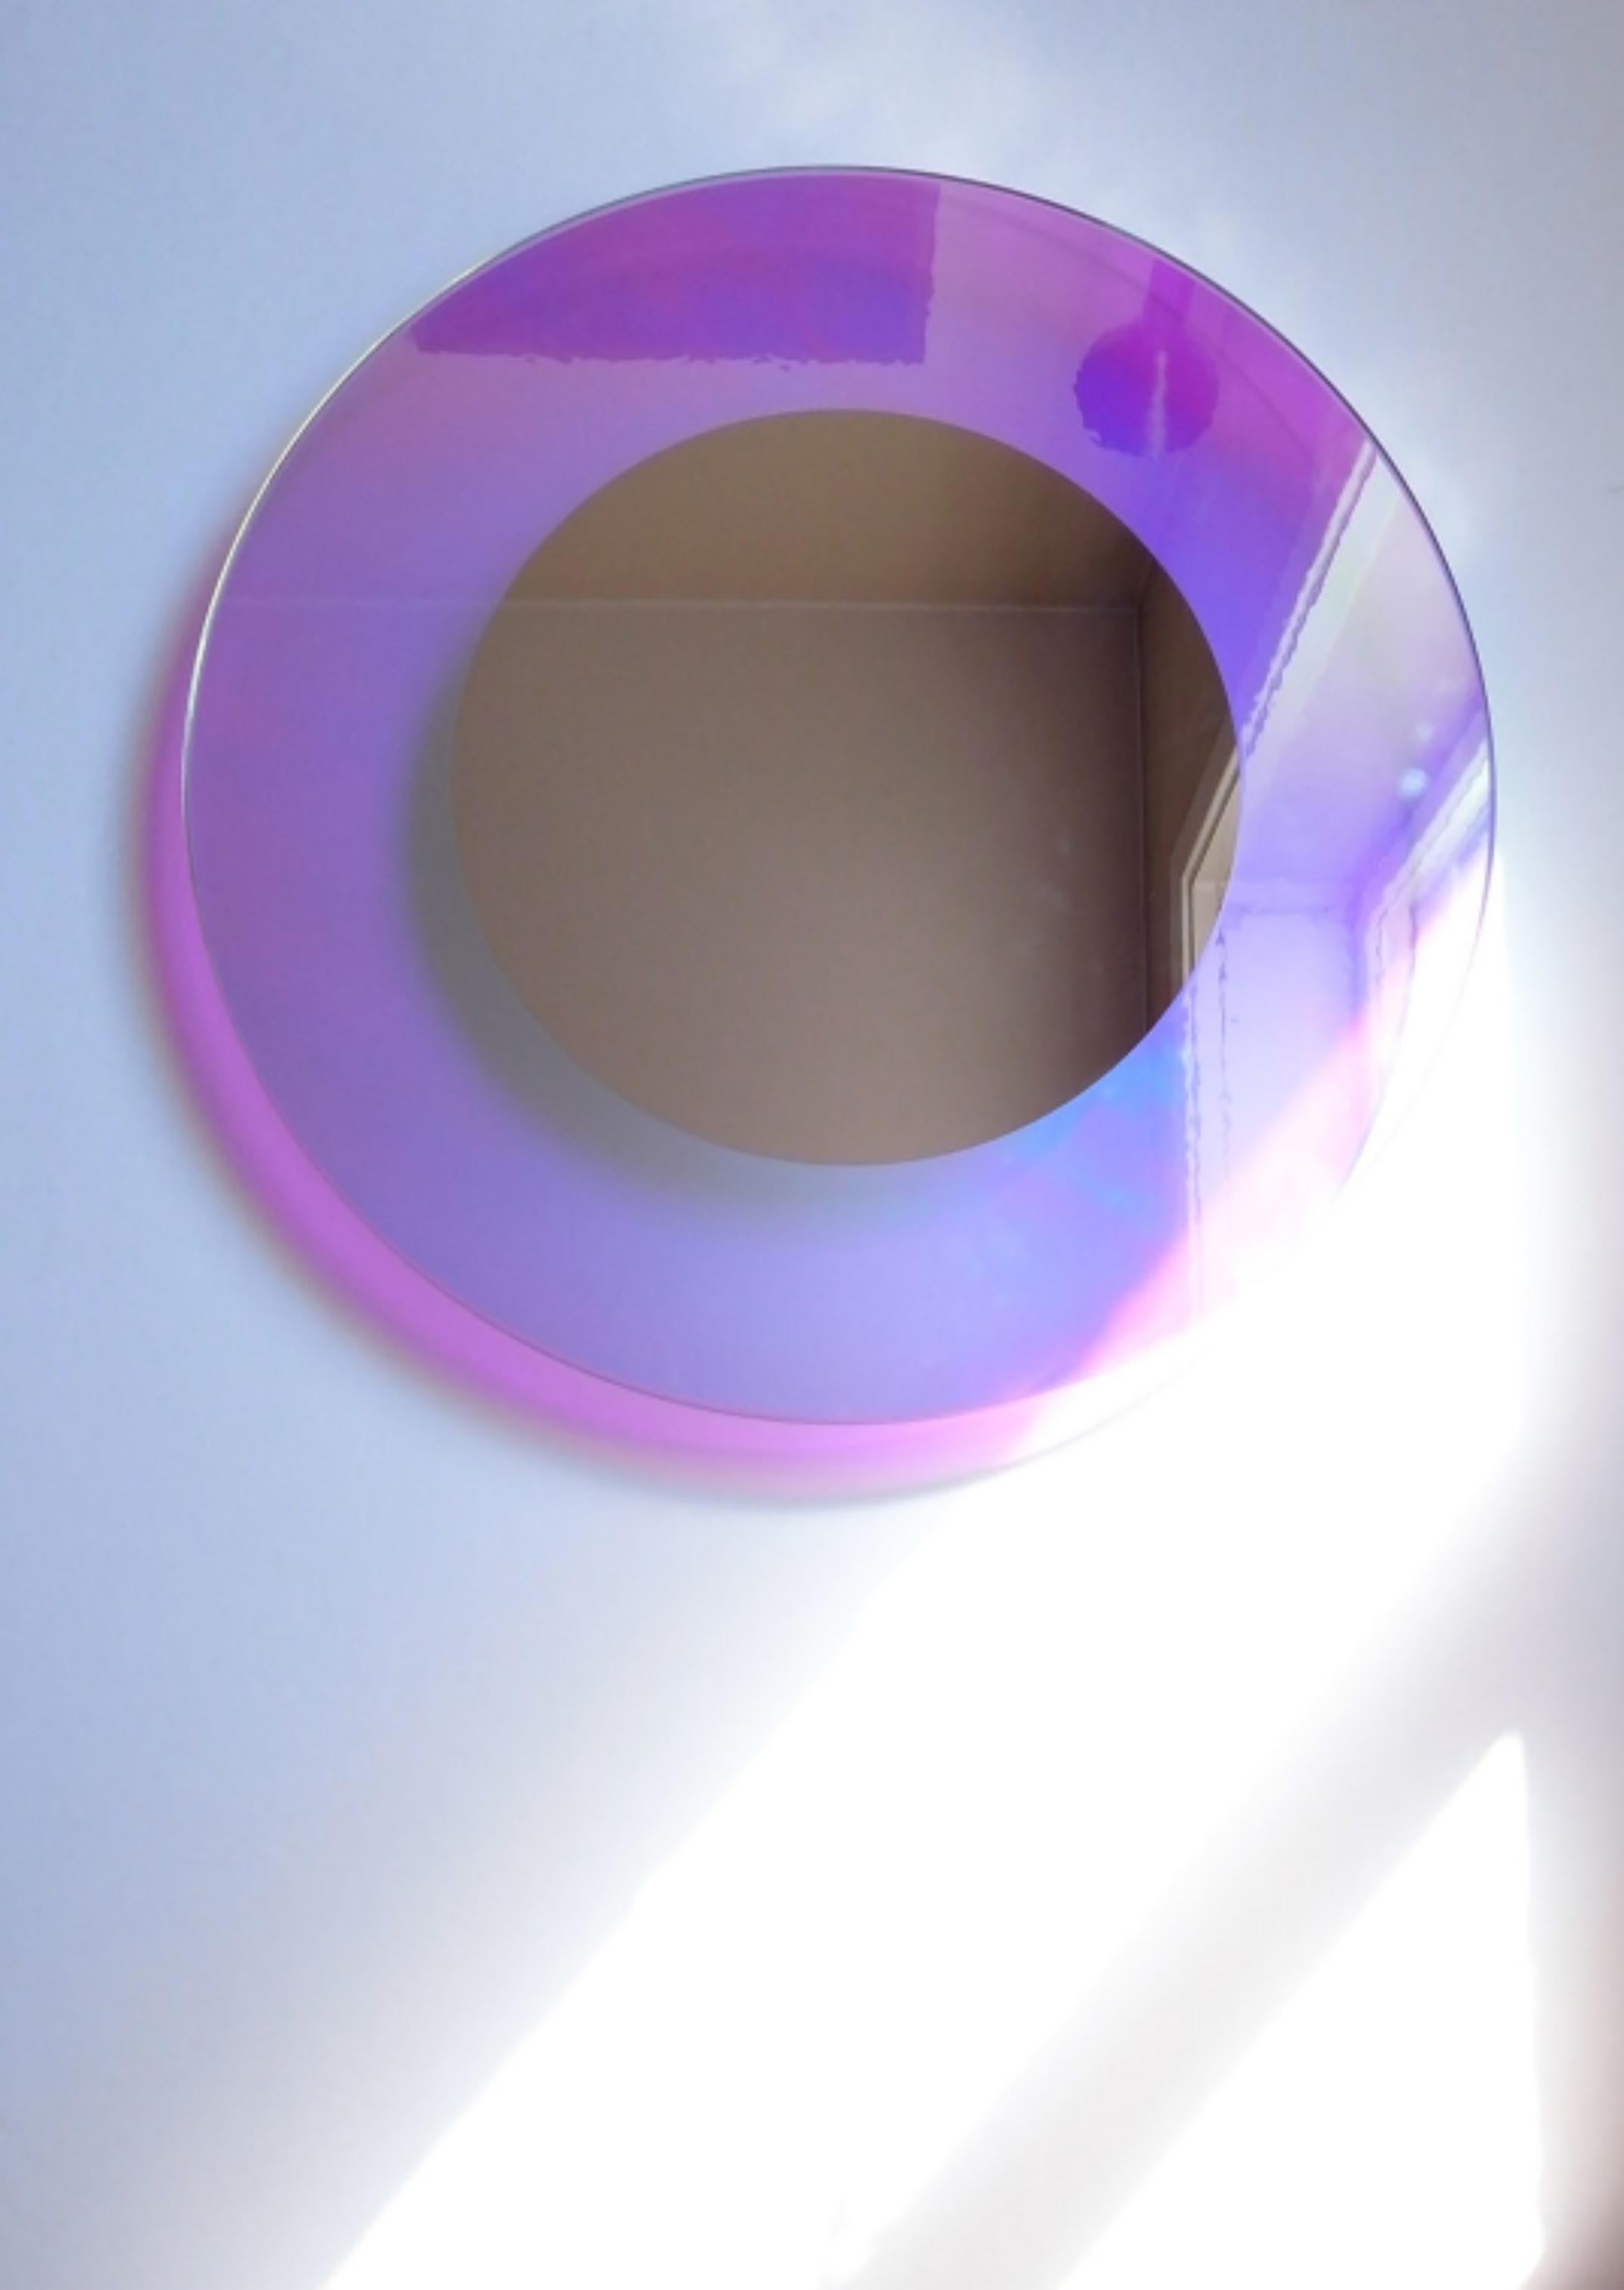 CF 11.3 miroir de Caturegli Formica
Dimensions : D 60 x H 60 cm
MATERIAL : Verre, miroir, bois.


Notes biographiques

Beppe Caturegli (1957) et Giovannella Formica (1957-2019) ont vécu dans l'atmosphère culturelle du mouvement de l'architecture